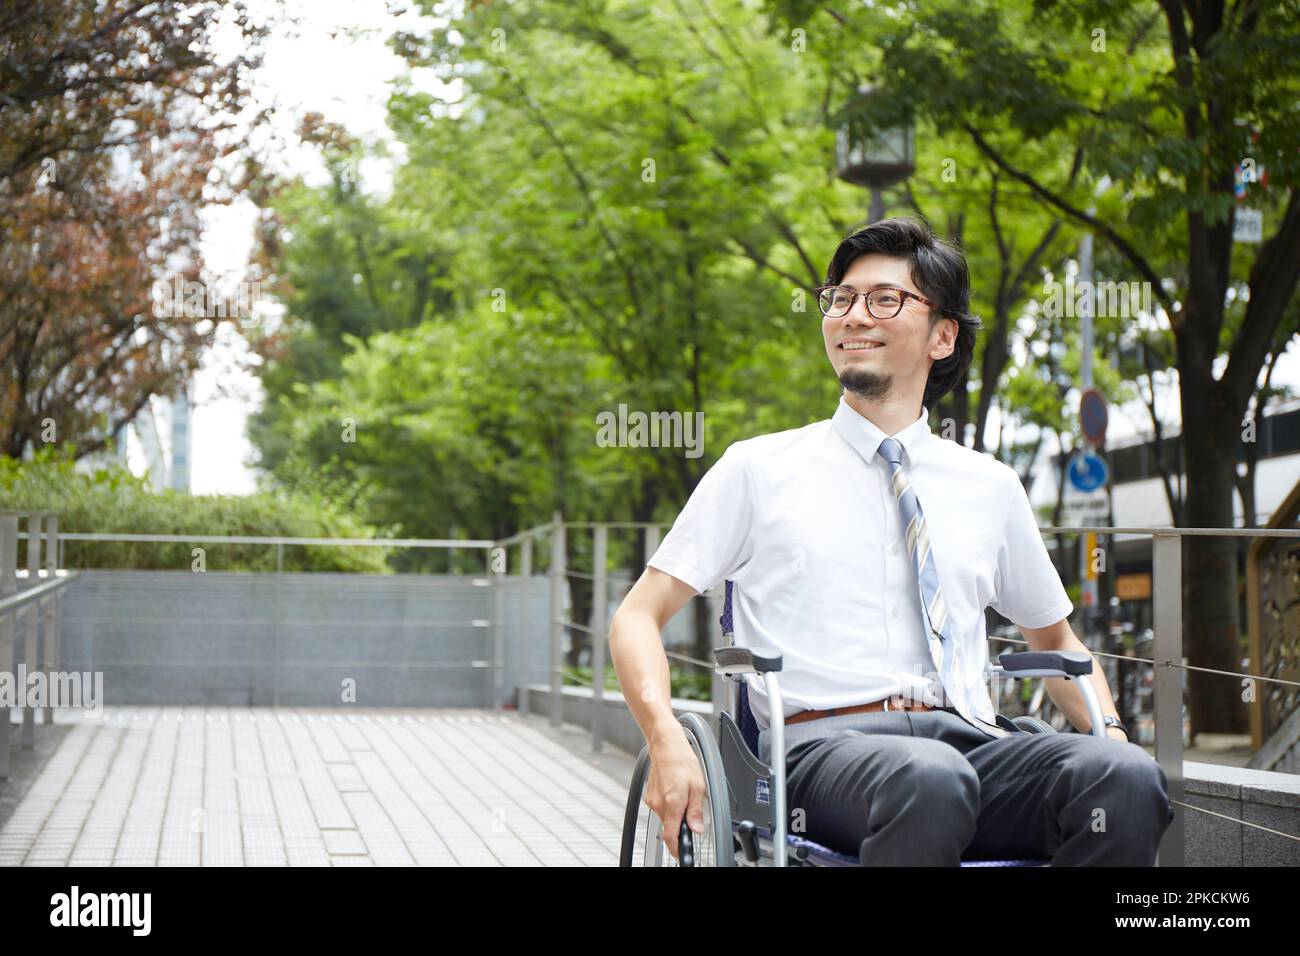 Ein Mann im Rollstuhl lächelt, während er die Rampe hinuntergeht Stockfoto